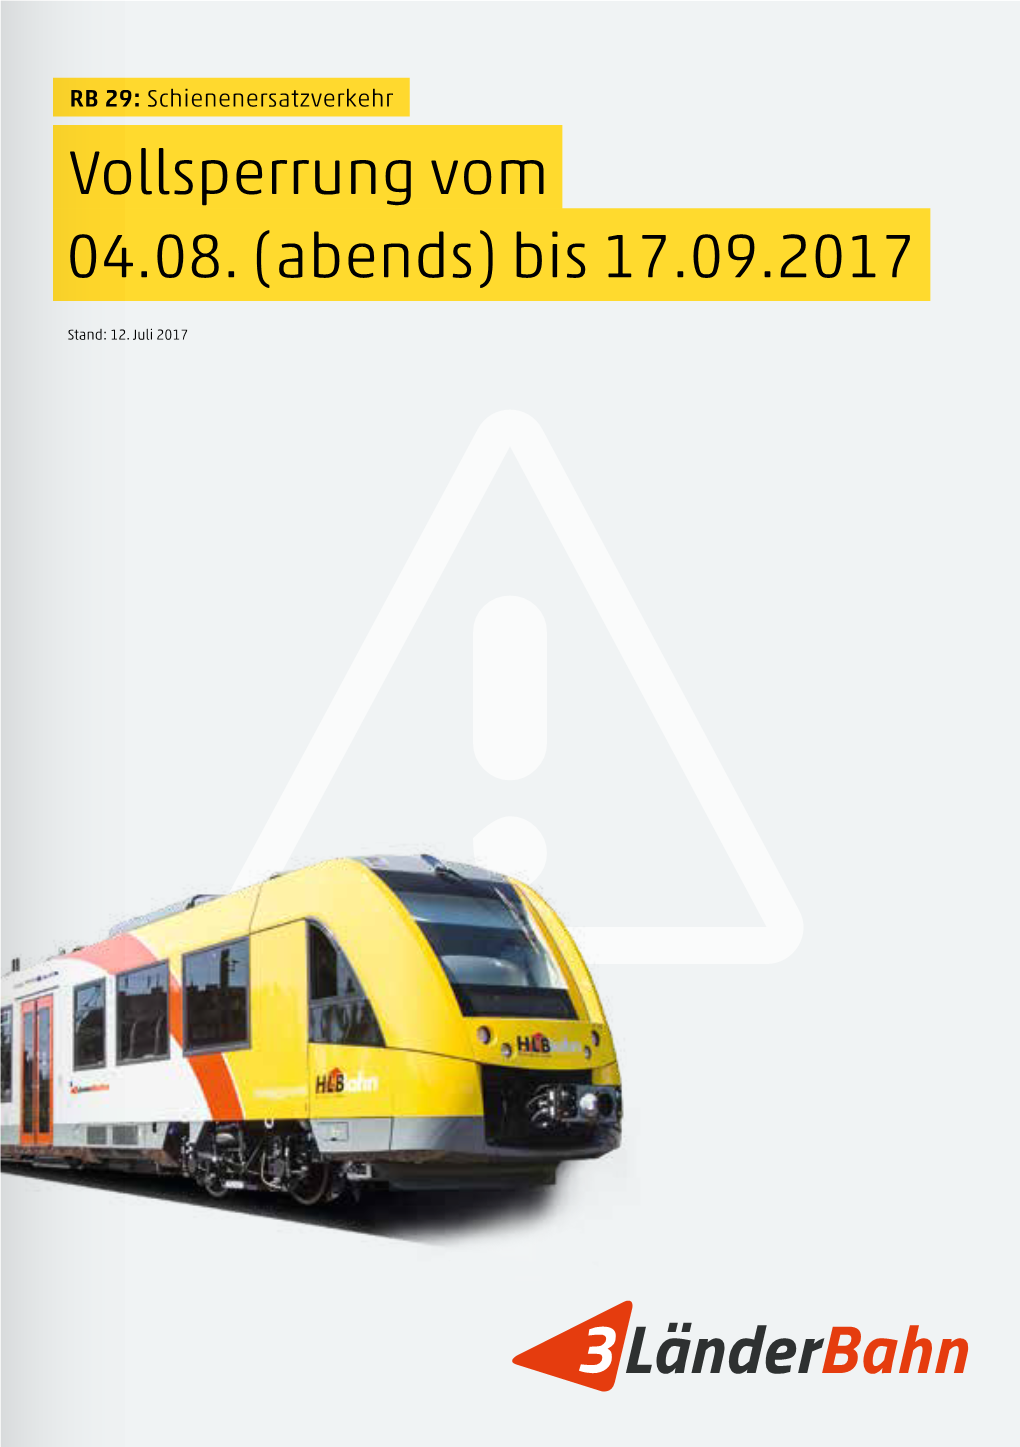 Länderbahn 3